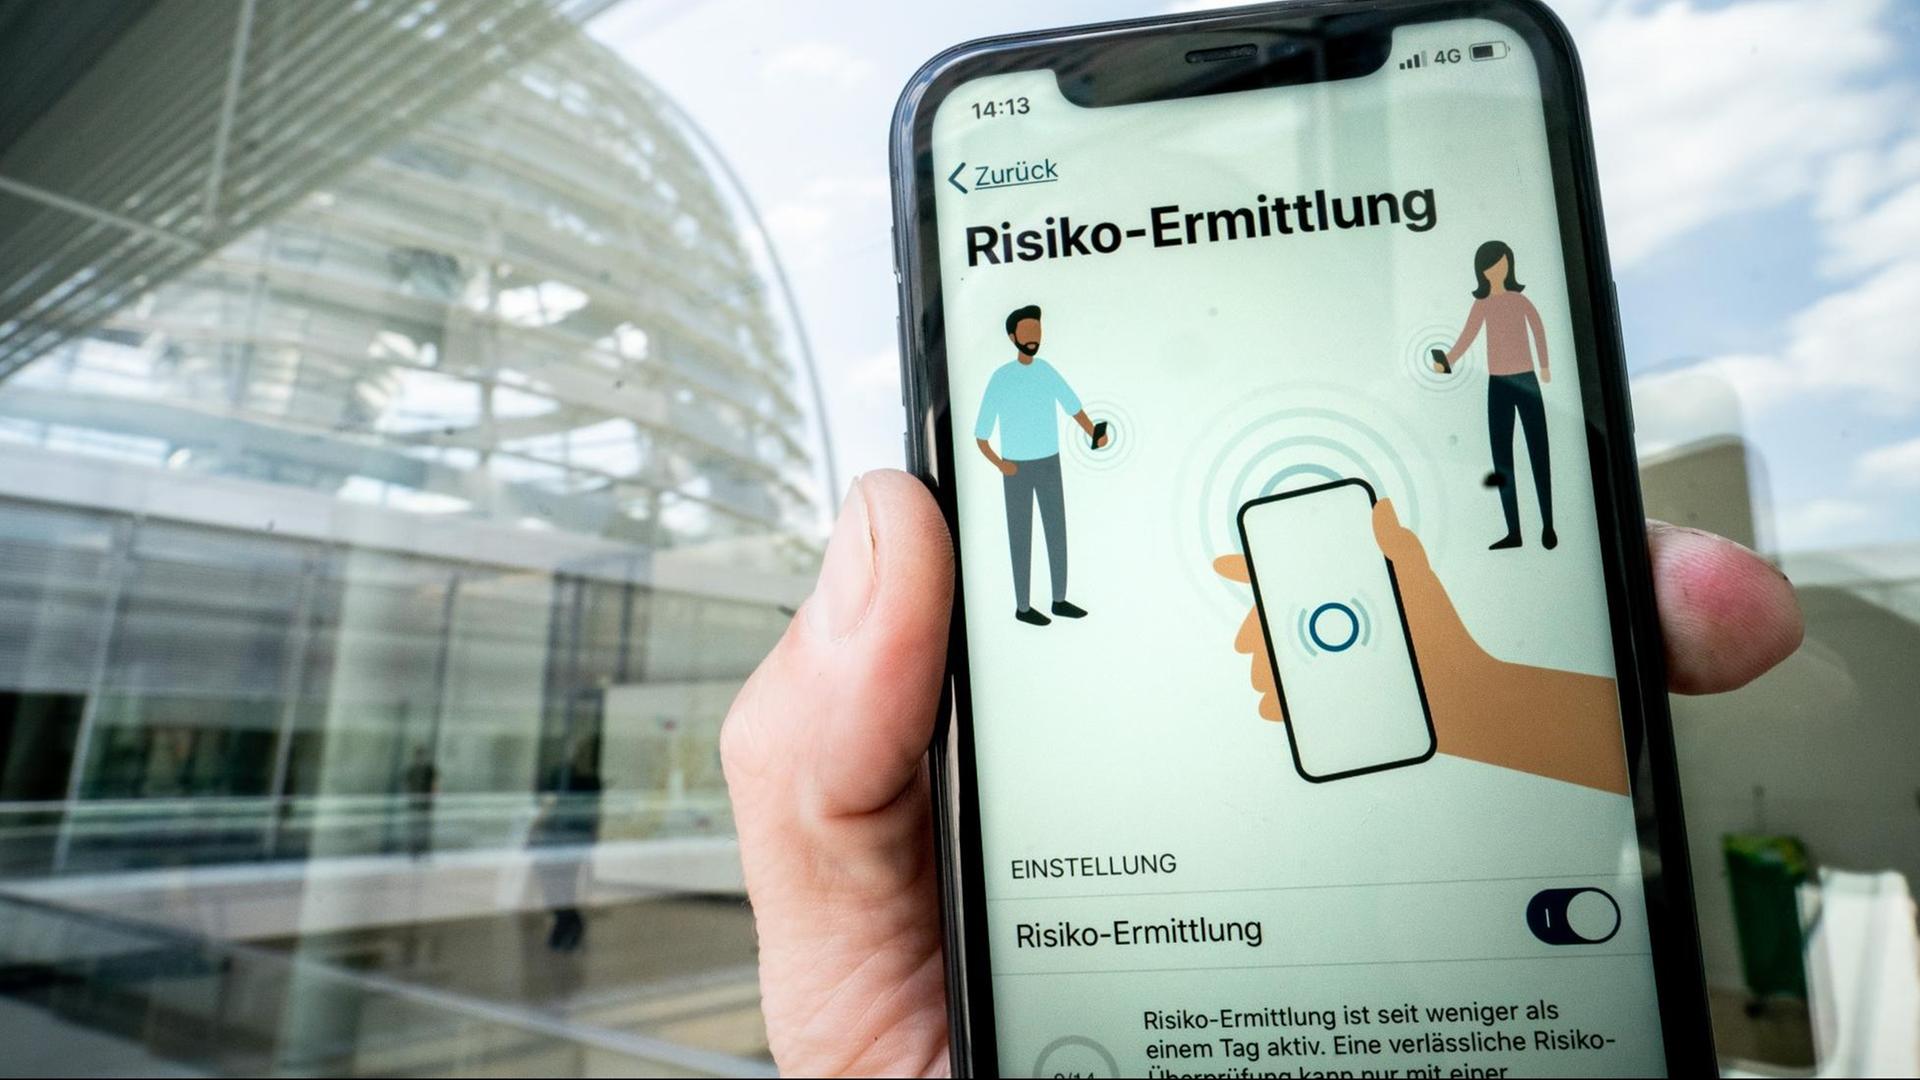 Die Corona-Warn-App mit der Seite zur Risiko-Ermittlung ist im Display eines Smartphone vor der Kuppel des Reichstags zu sehen.